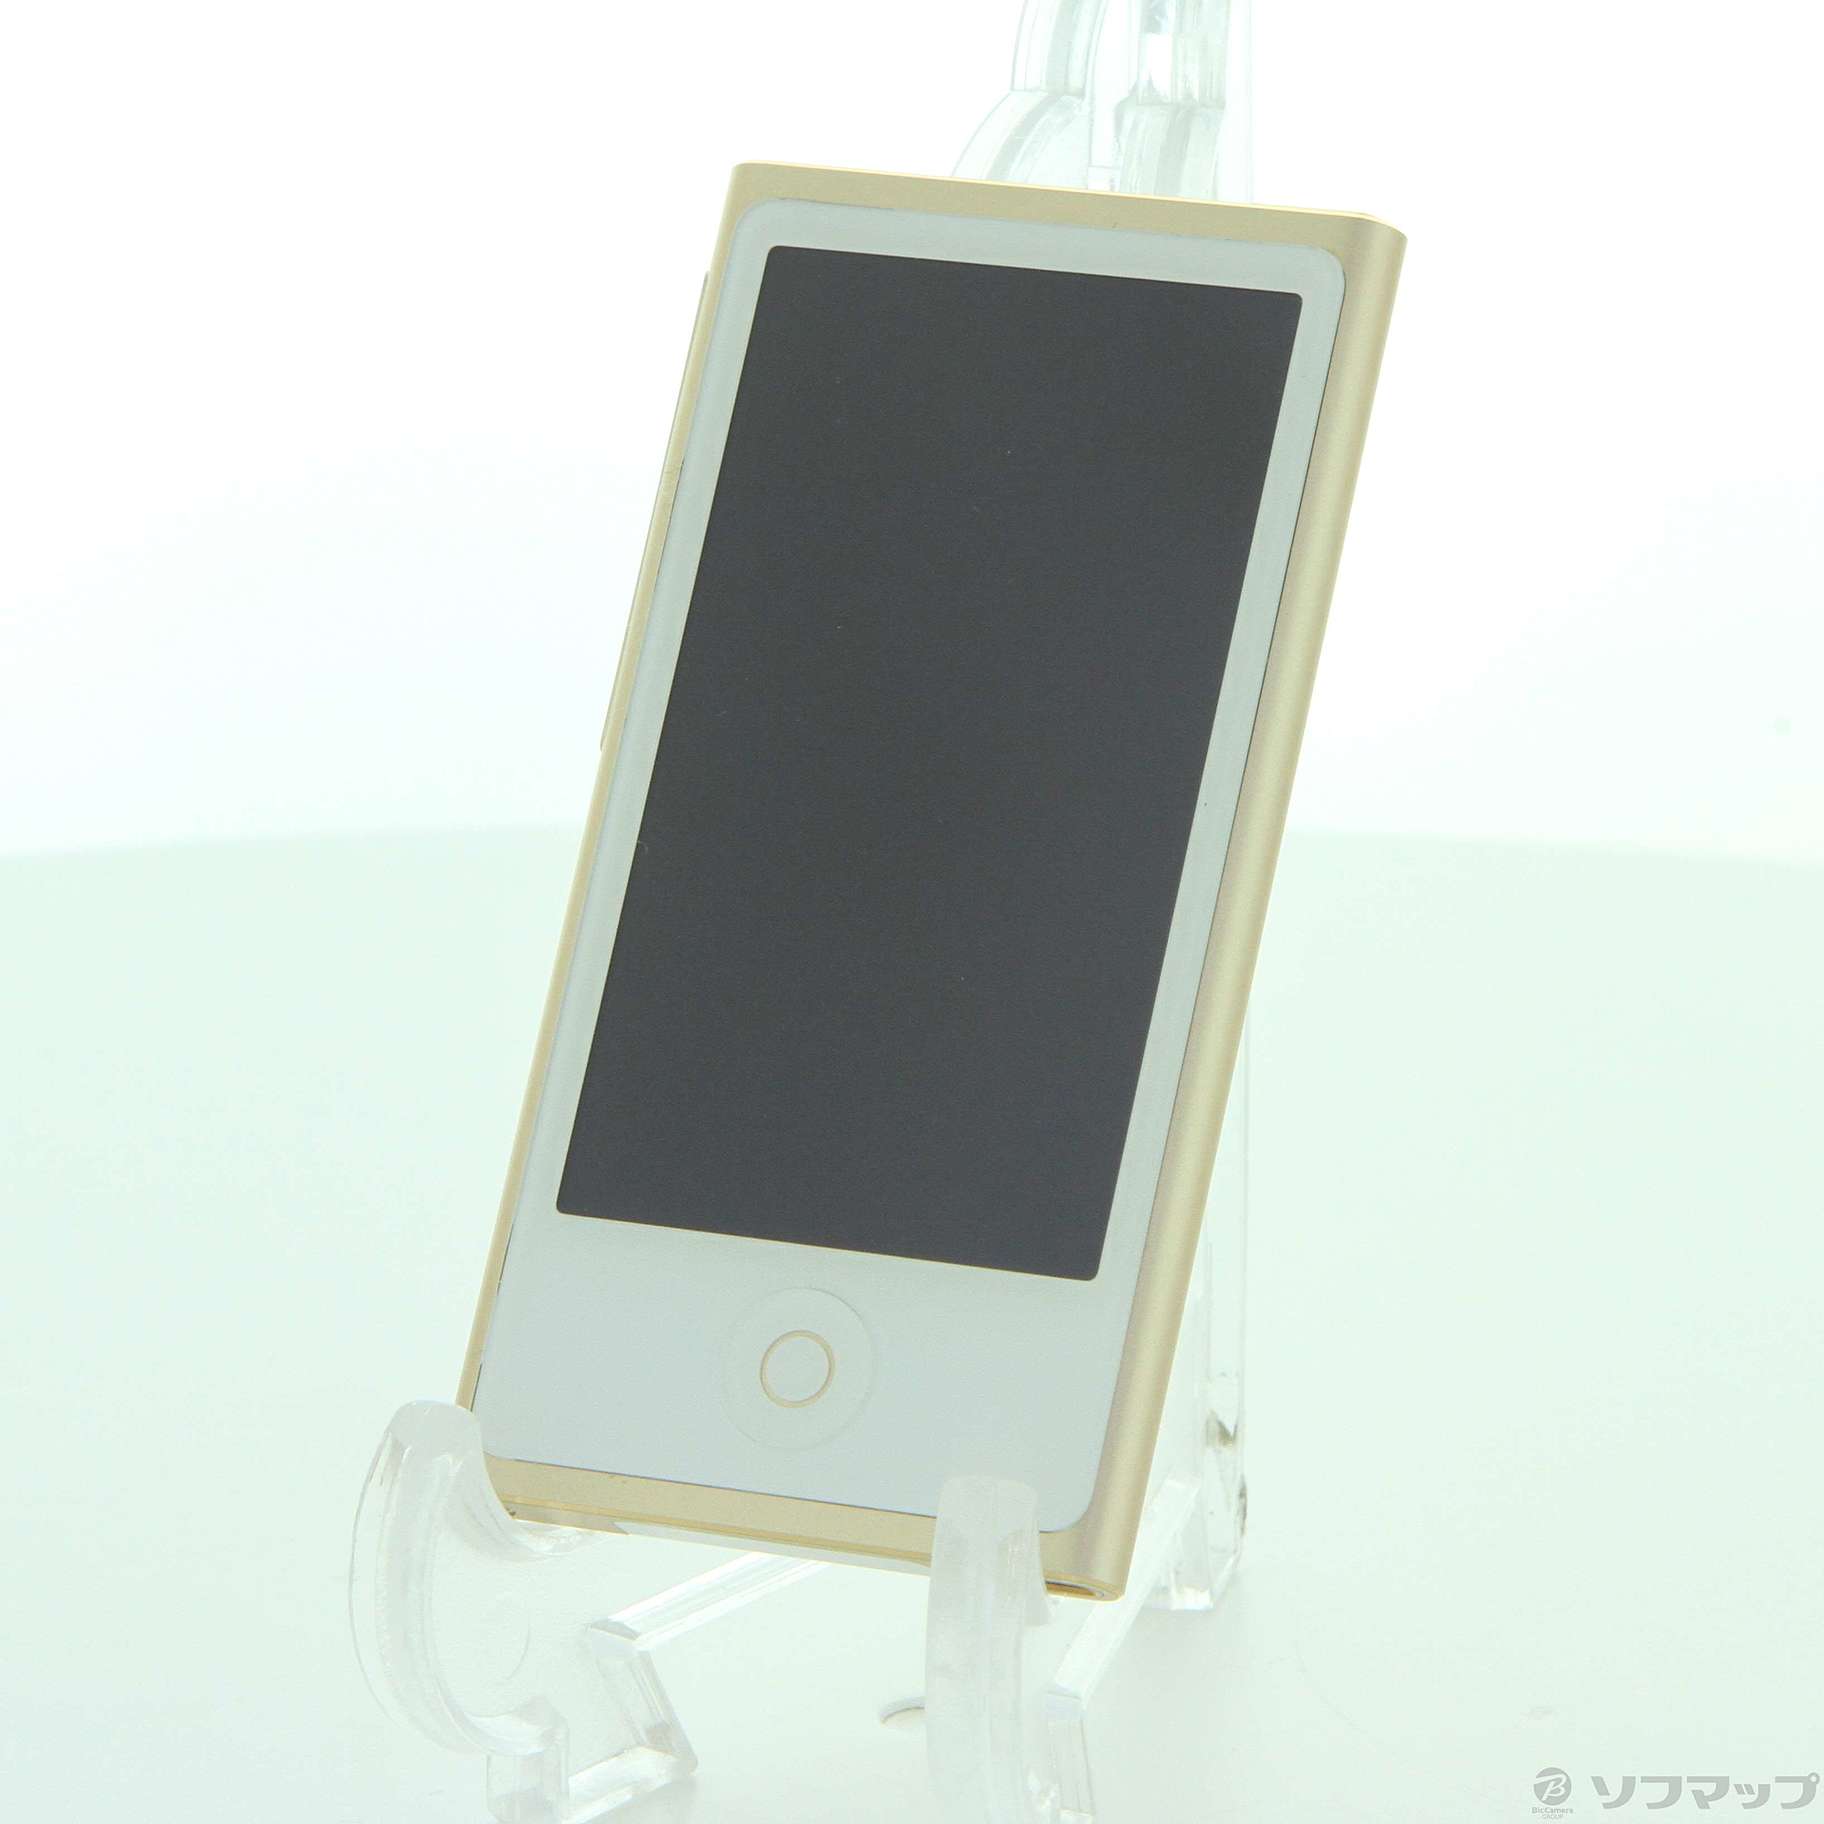 【値下げ】iPod nano 第7世代 16GB ゴールド